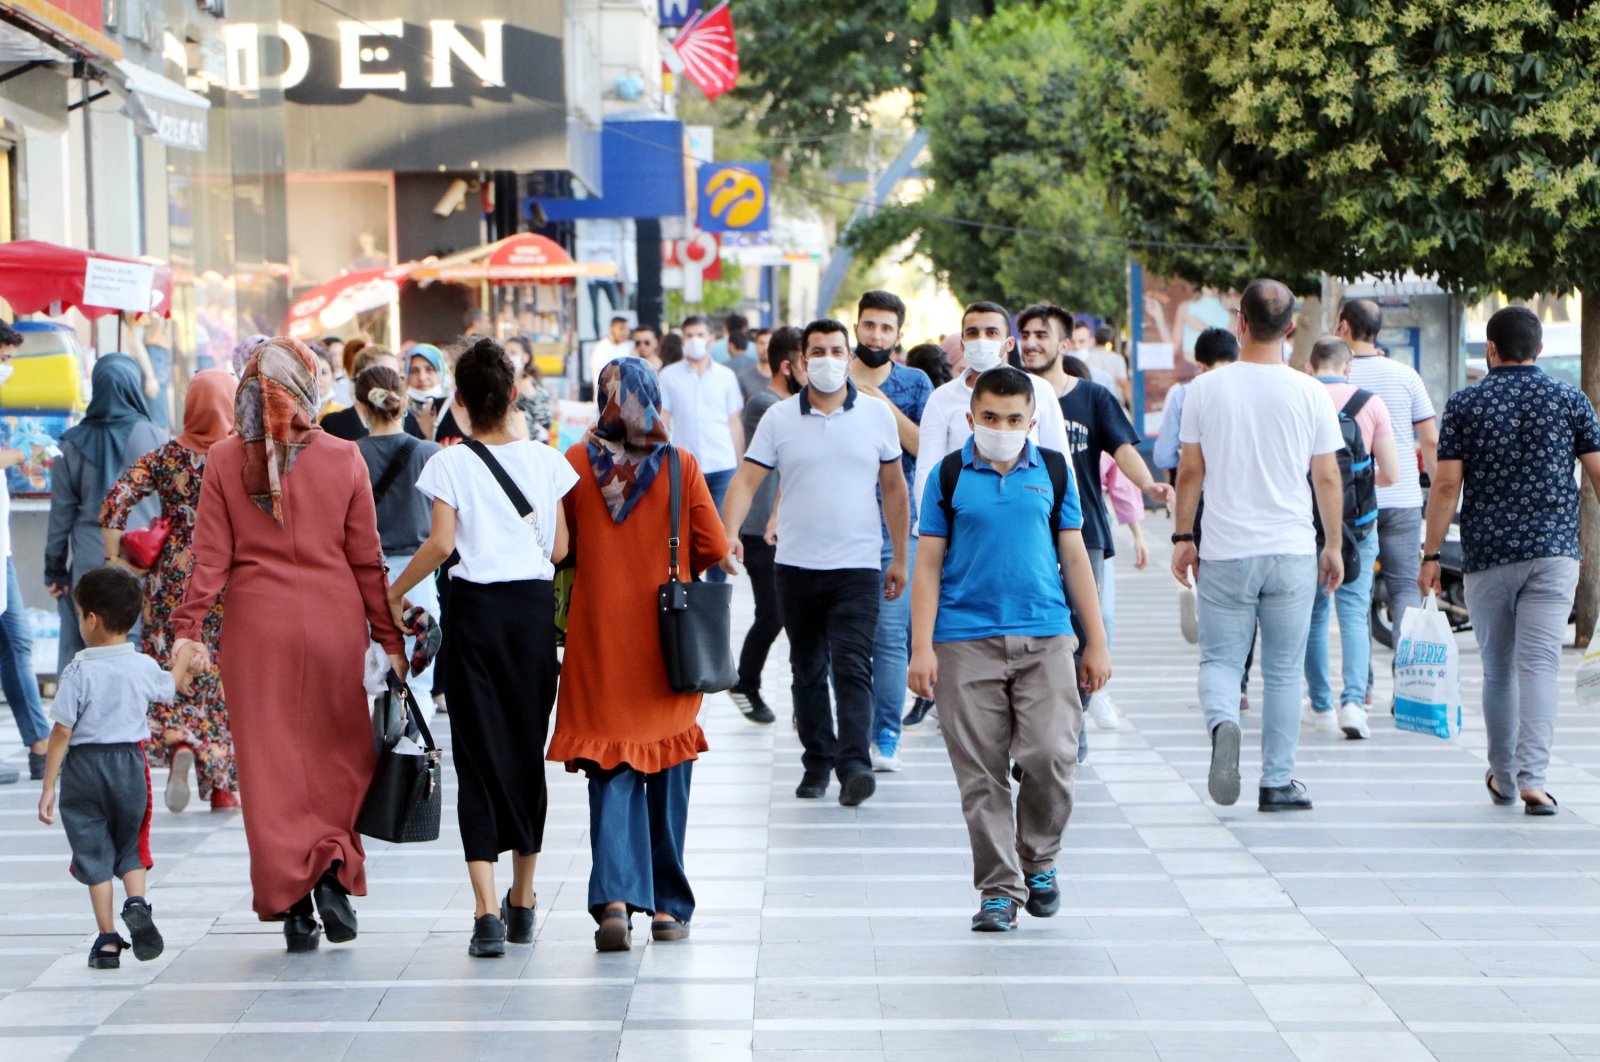 People wearing masks against COVID-19 walk on a street in Şanlıurfa, southeastern Turkey, July 24, 2020. (DHA Photo)